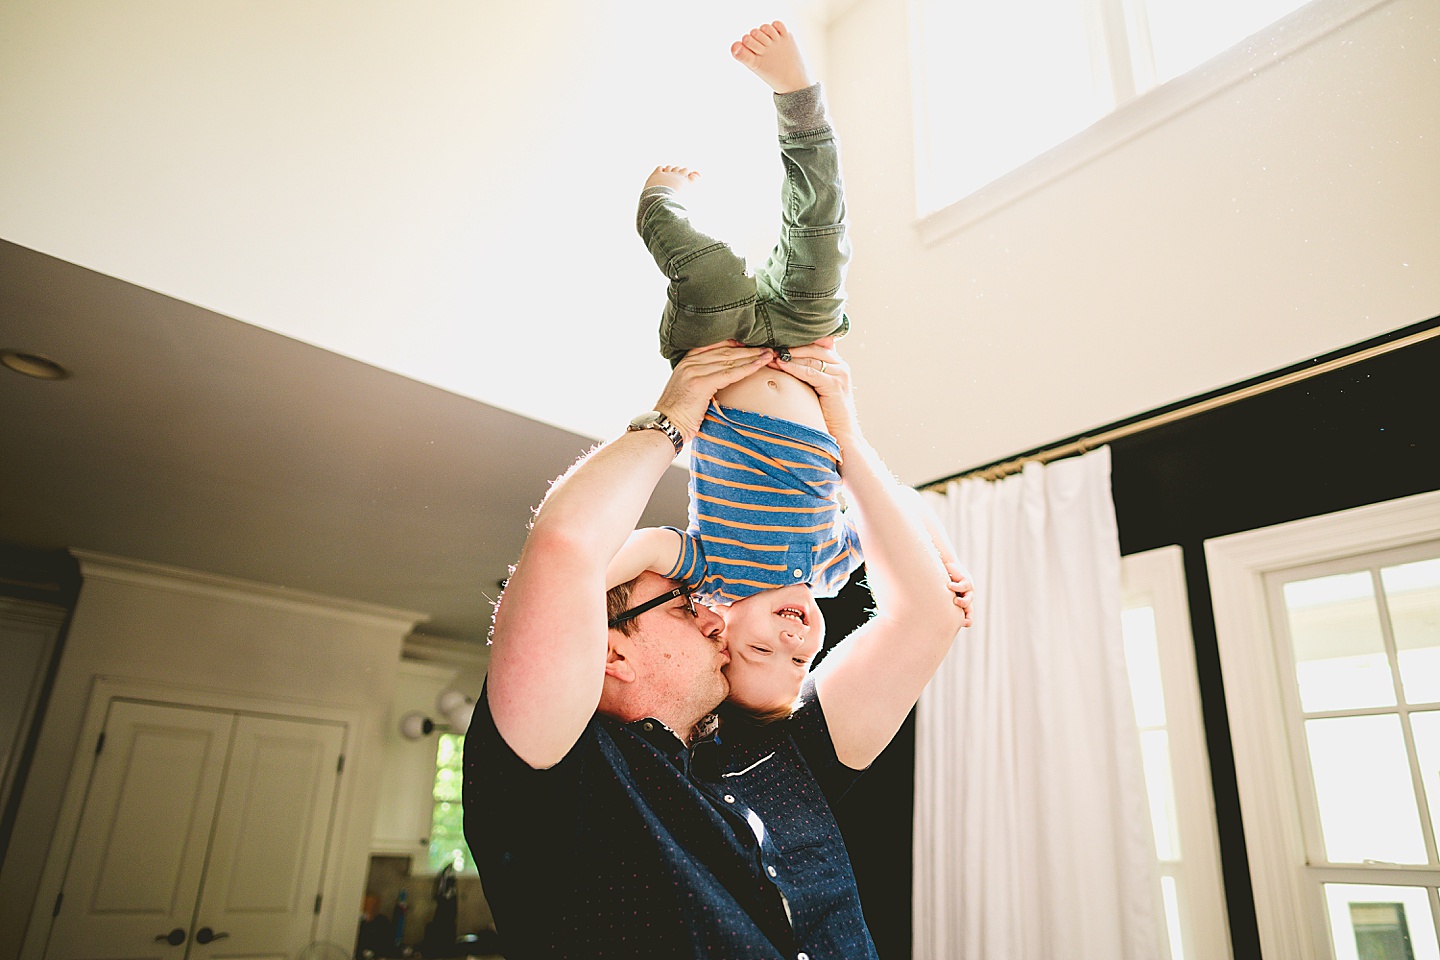 Kid being held upside down by his dad